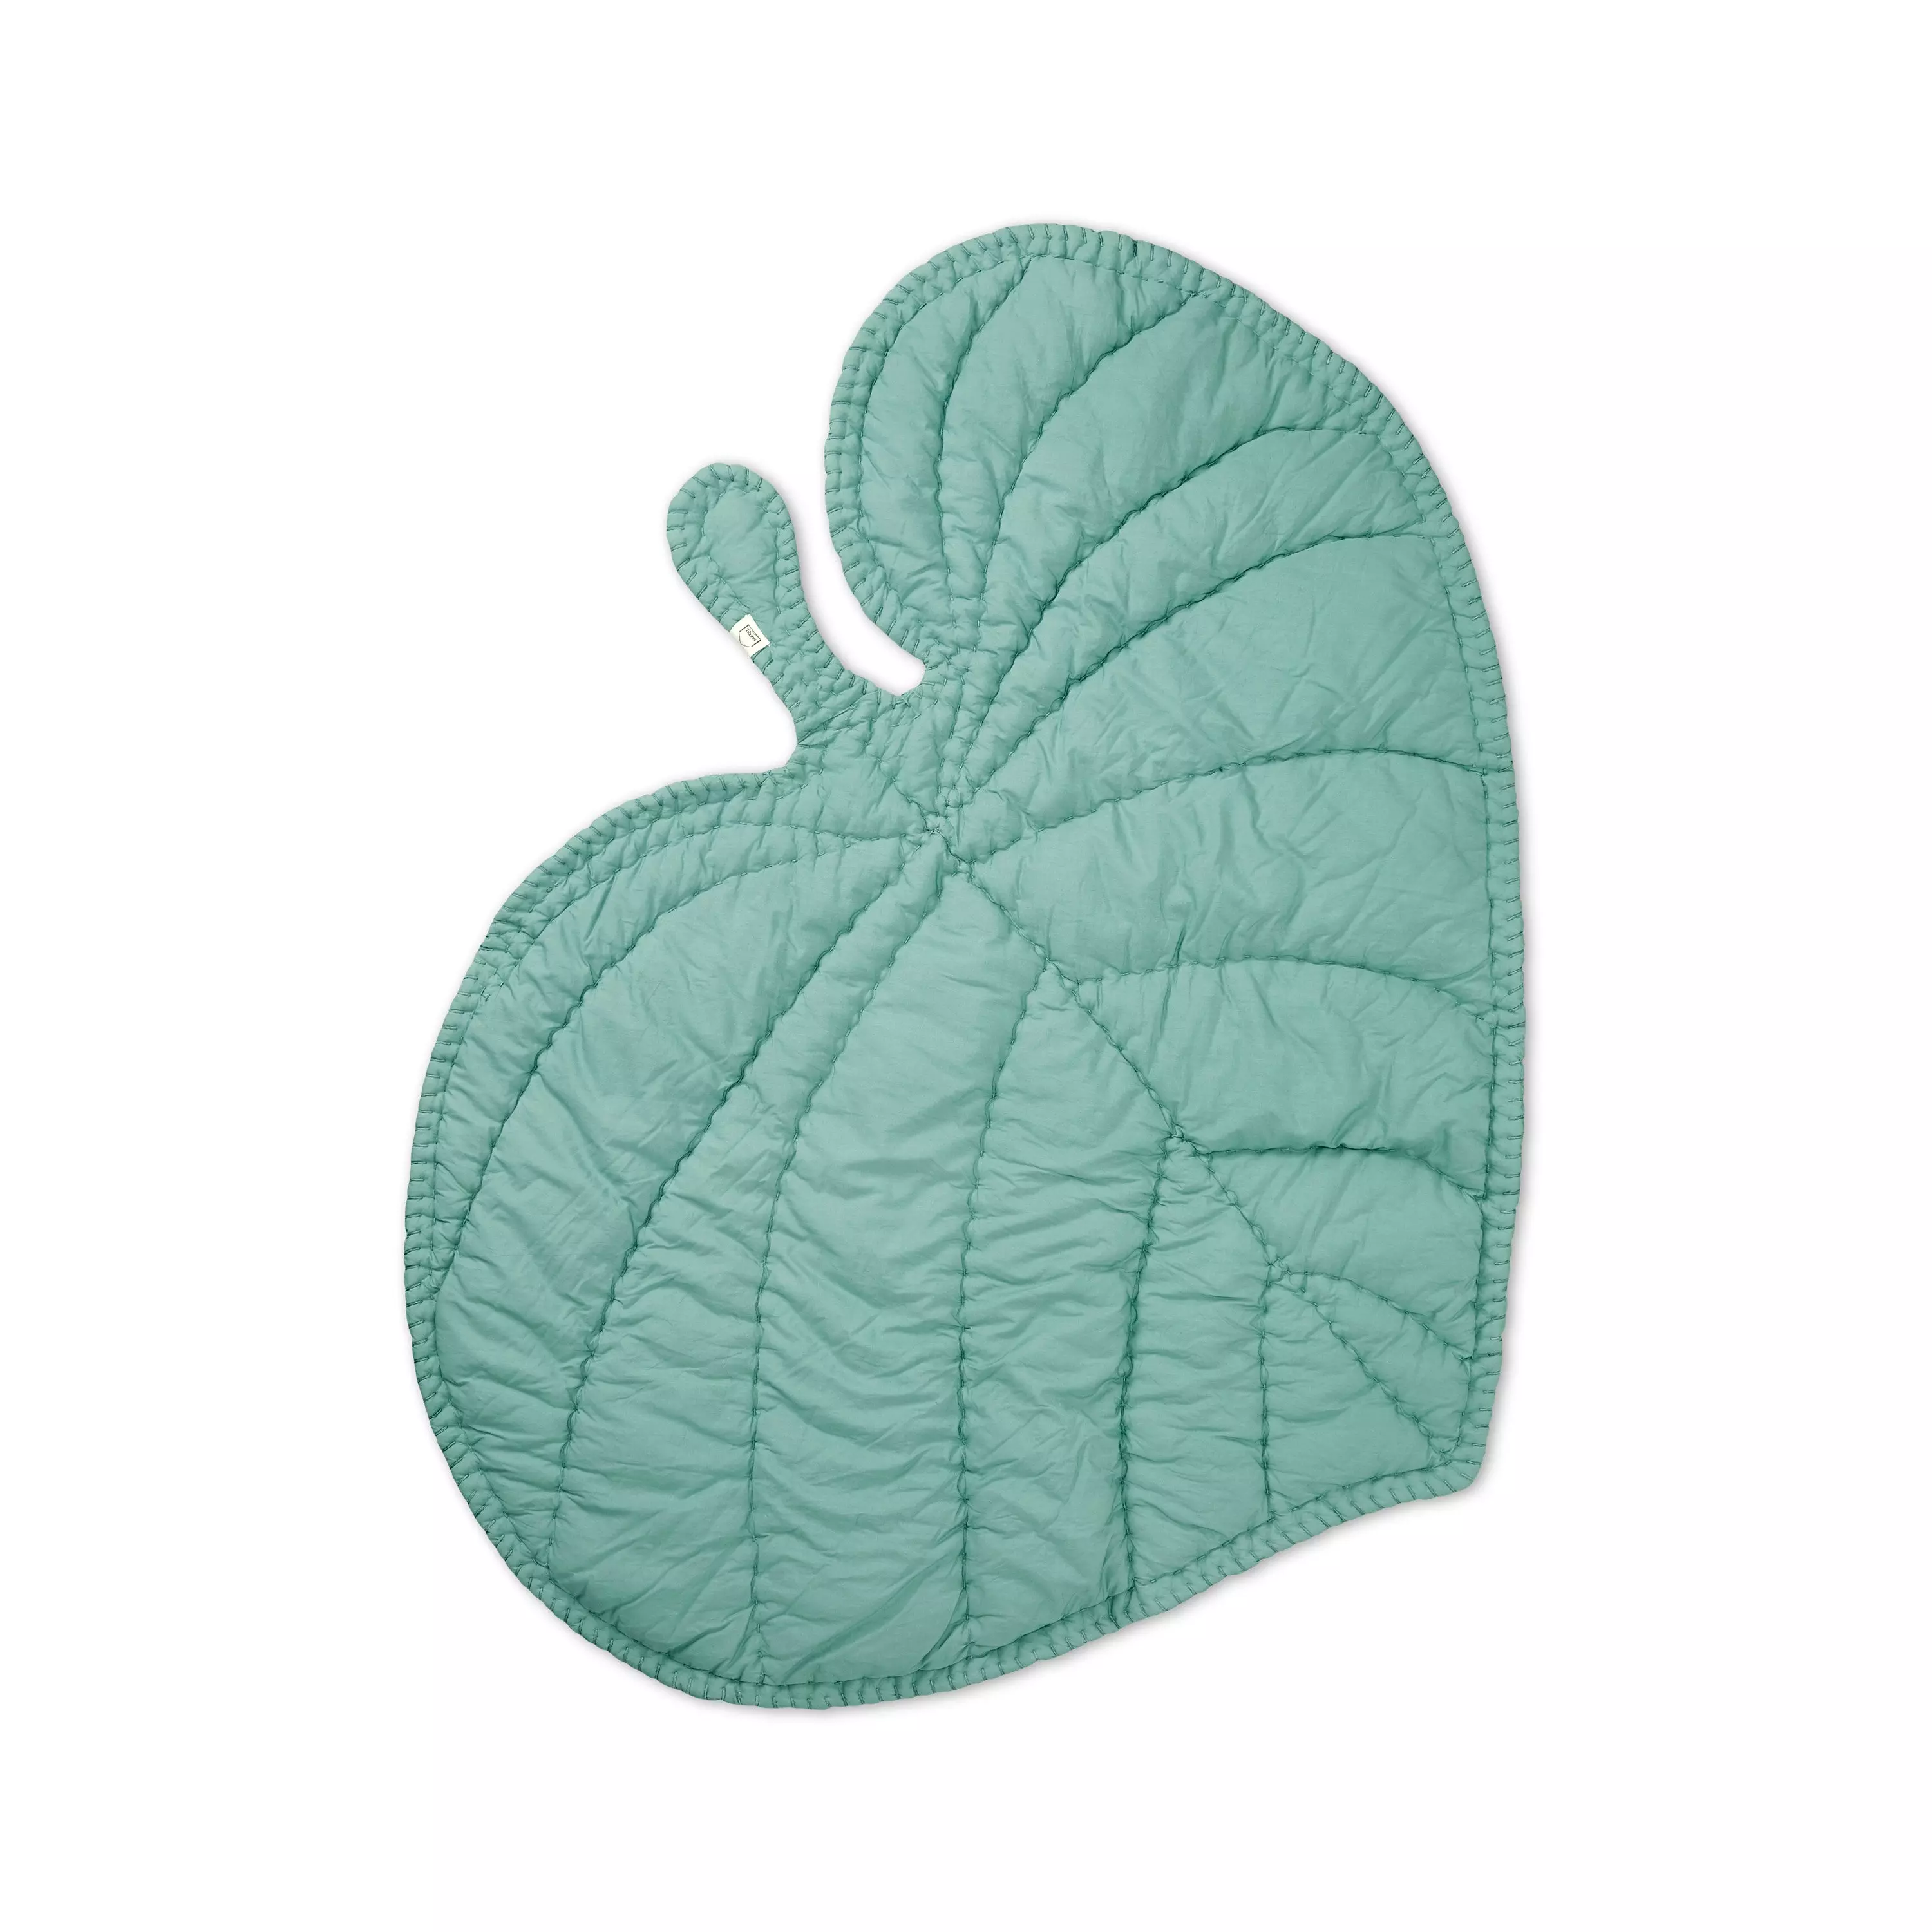 Nofred Leaf Blanket Mint Green